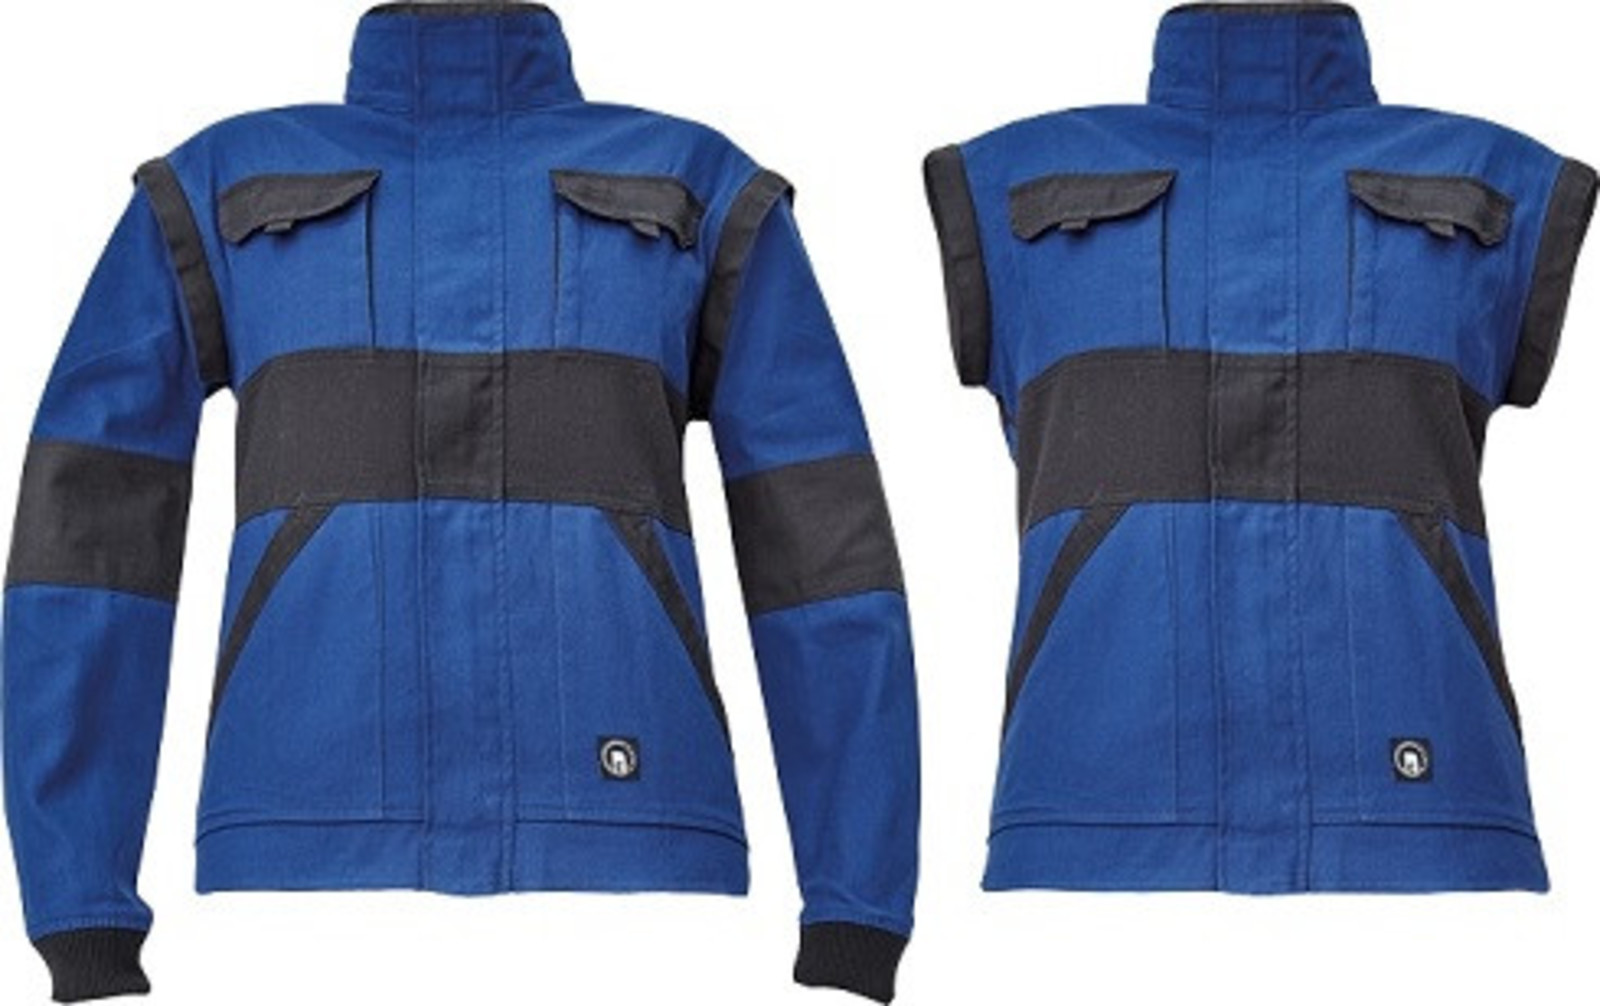 Dámska bavlnená montérková bunda Cerva Max Neo Lady 2v1 - veľkosť: 38, farba: modrá/čierna